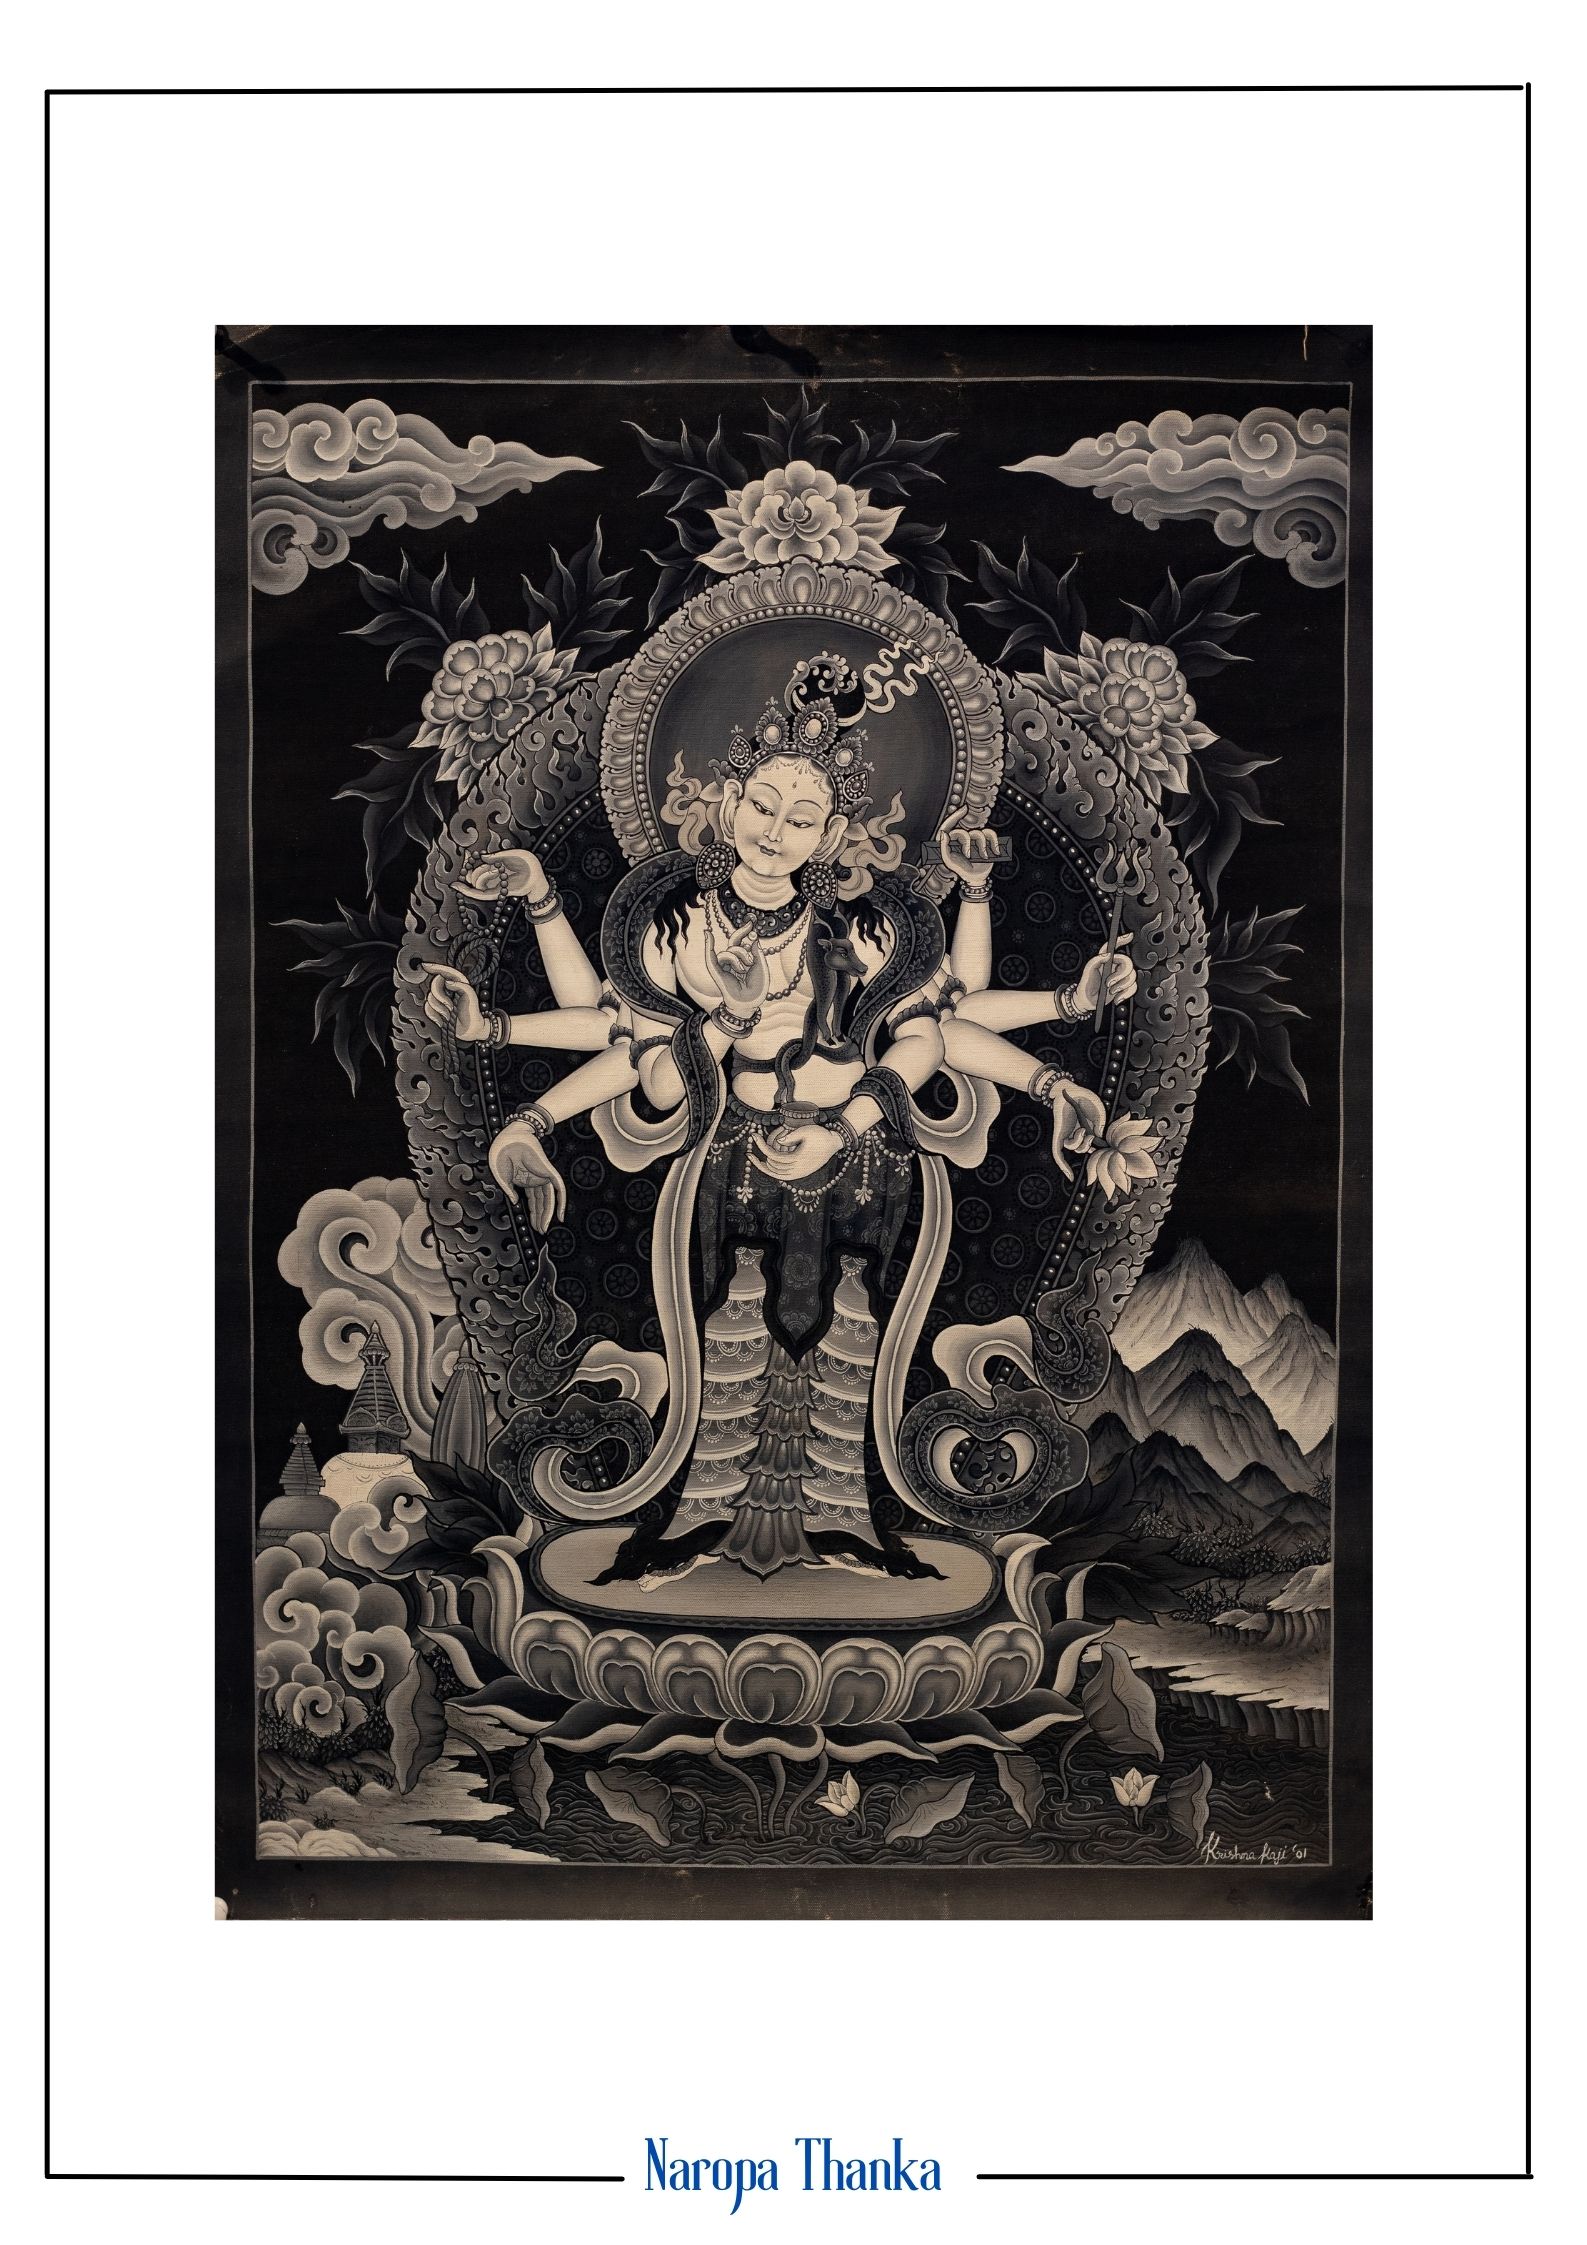 Avalokiteshvara  with 8 Arms, Nepali art, Black and white 46*34cm